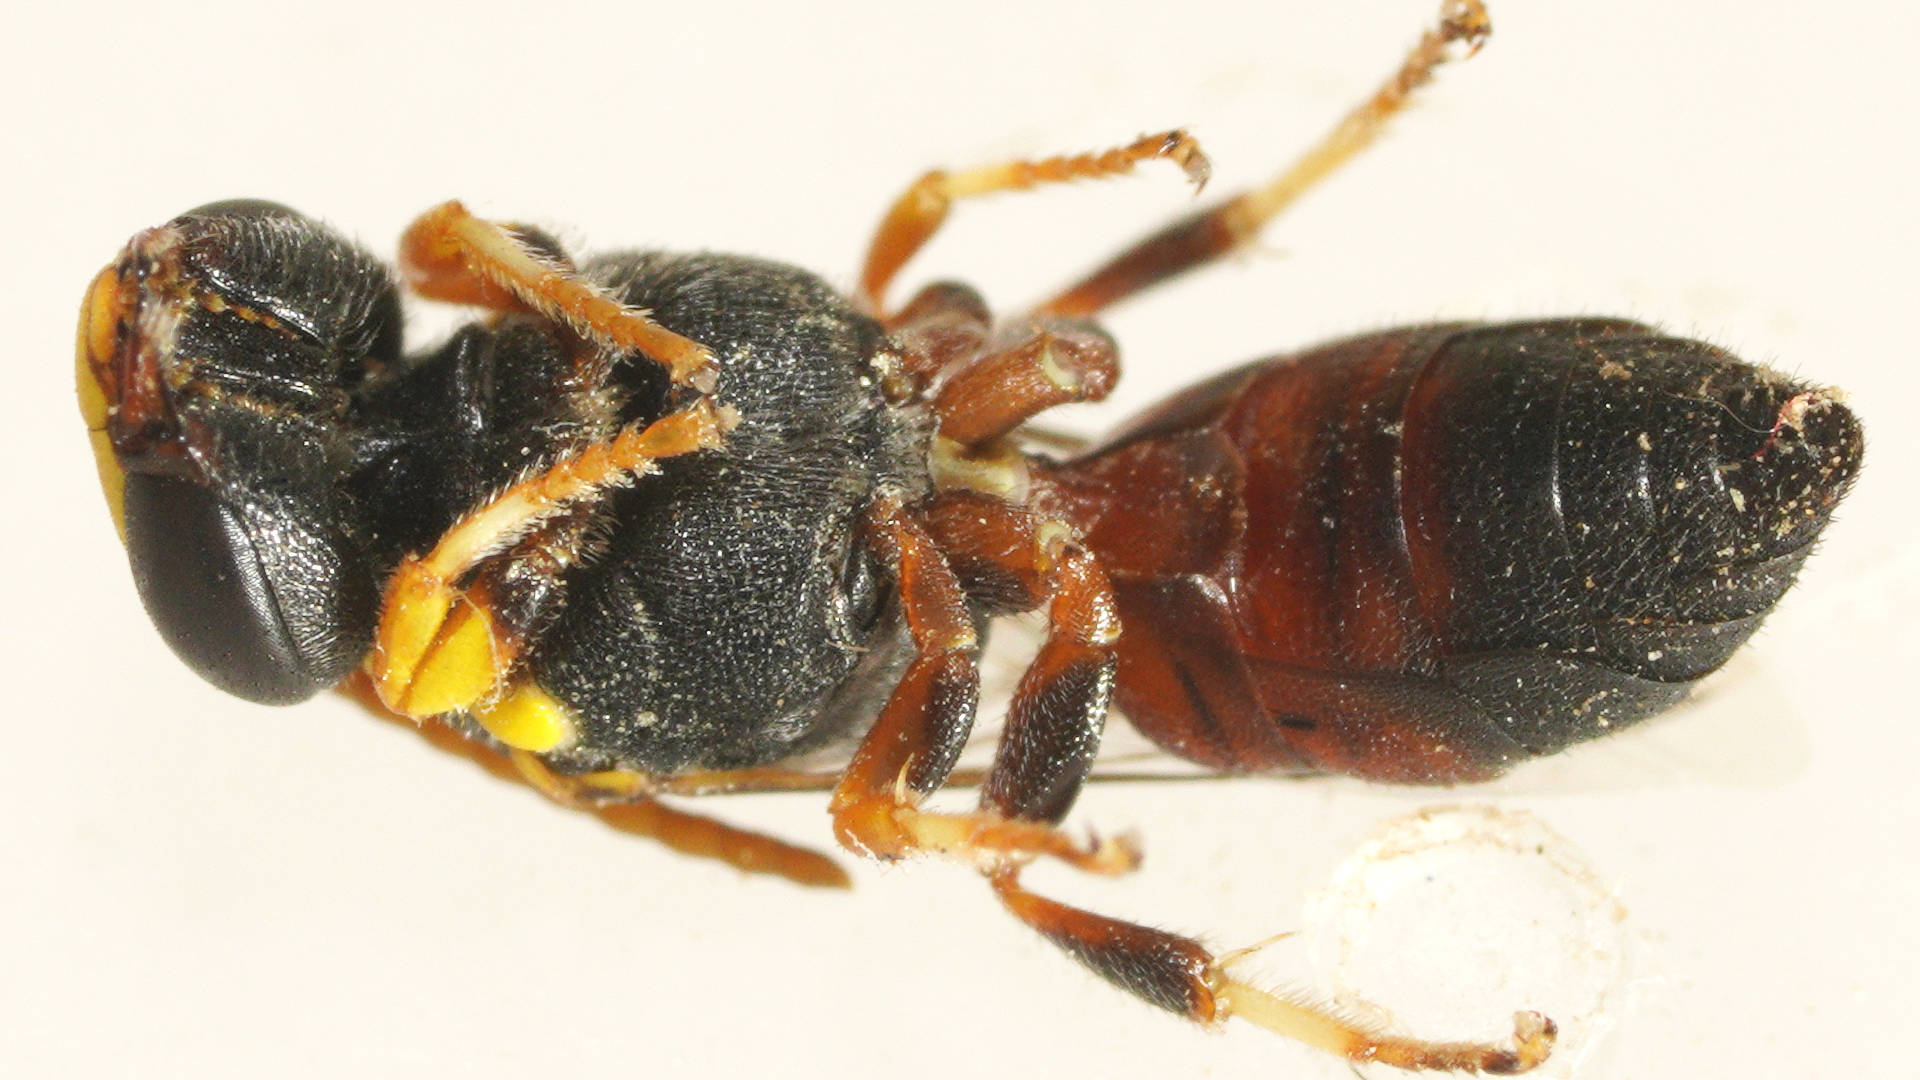 Dromedary Masked Bee (Hylaeus (Euprosopellus) dromedarius)